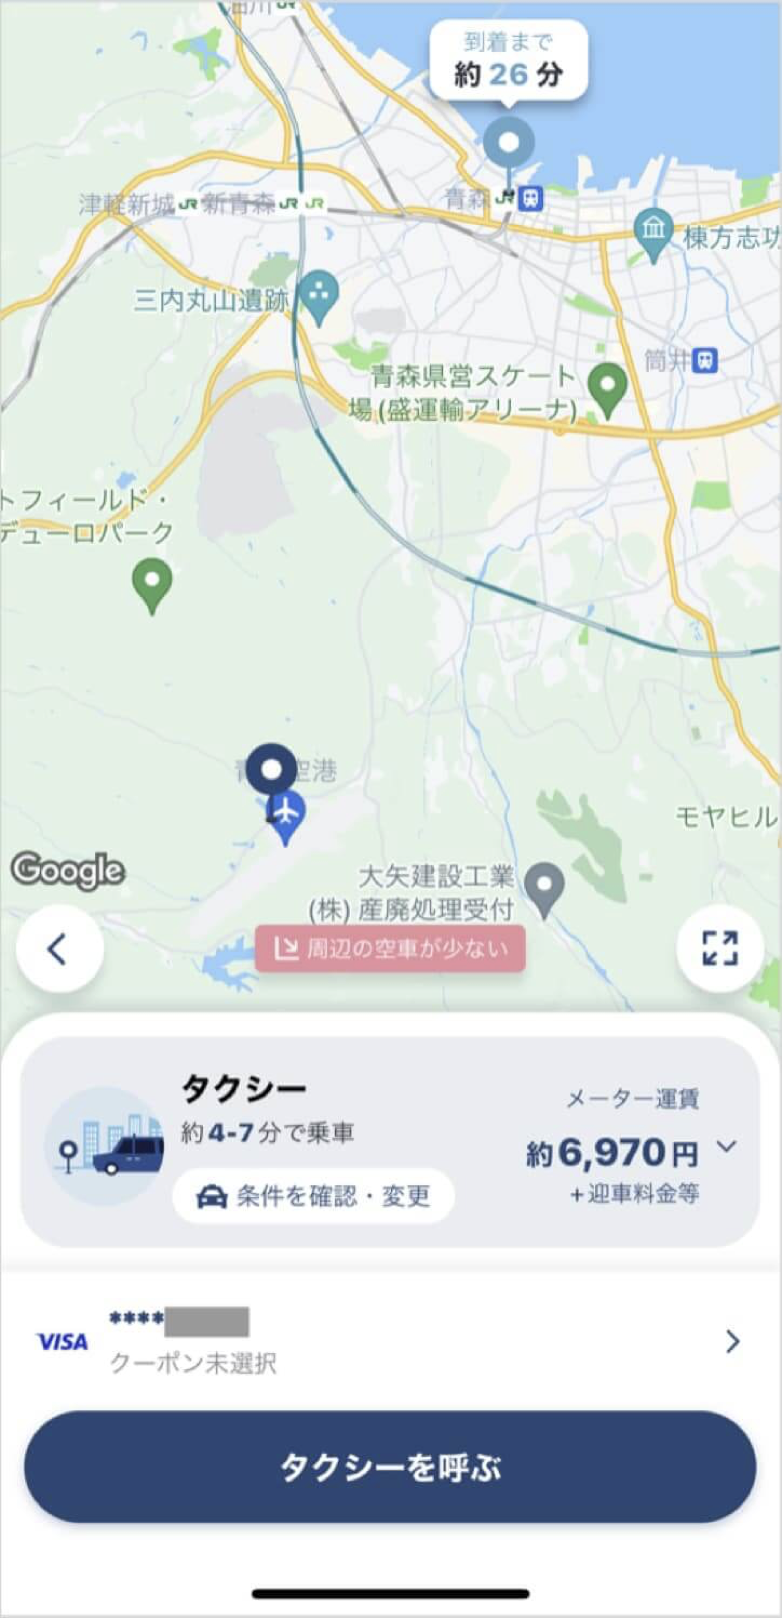 青森空港から青森駅までのタクシー料金・所要時間まとめ